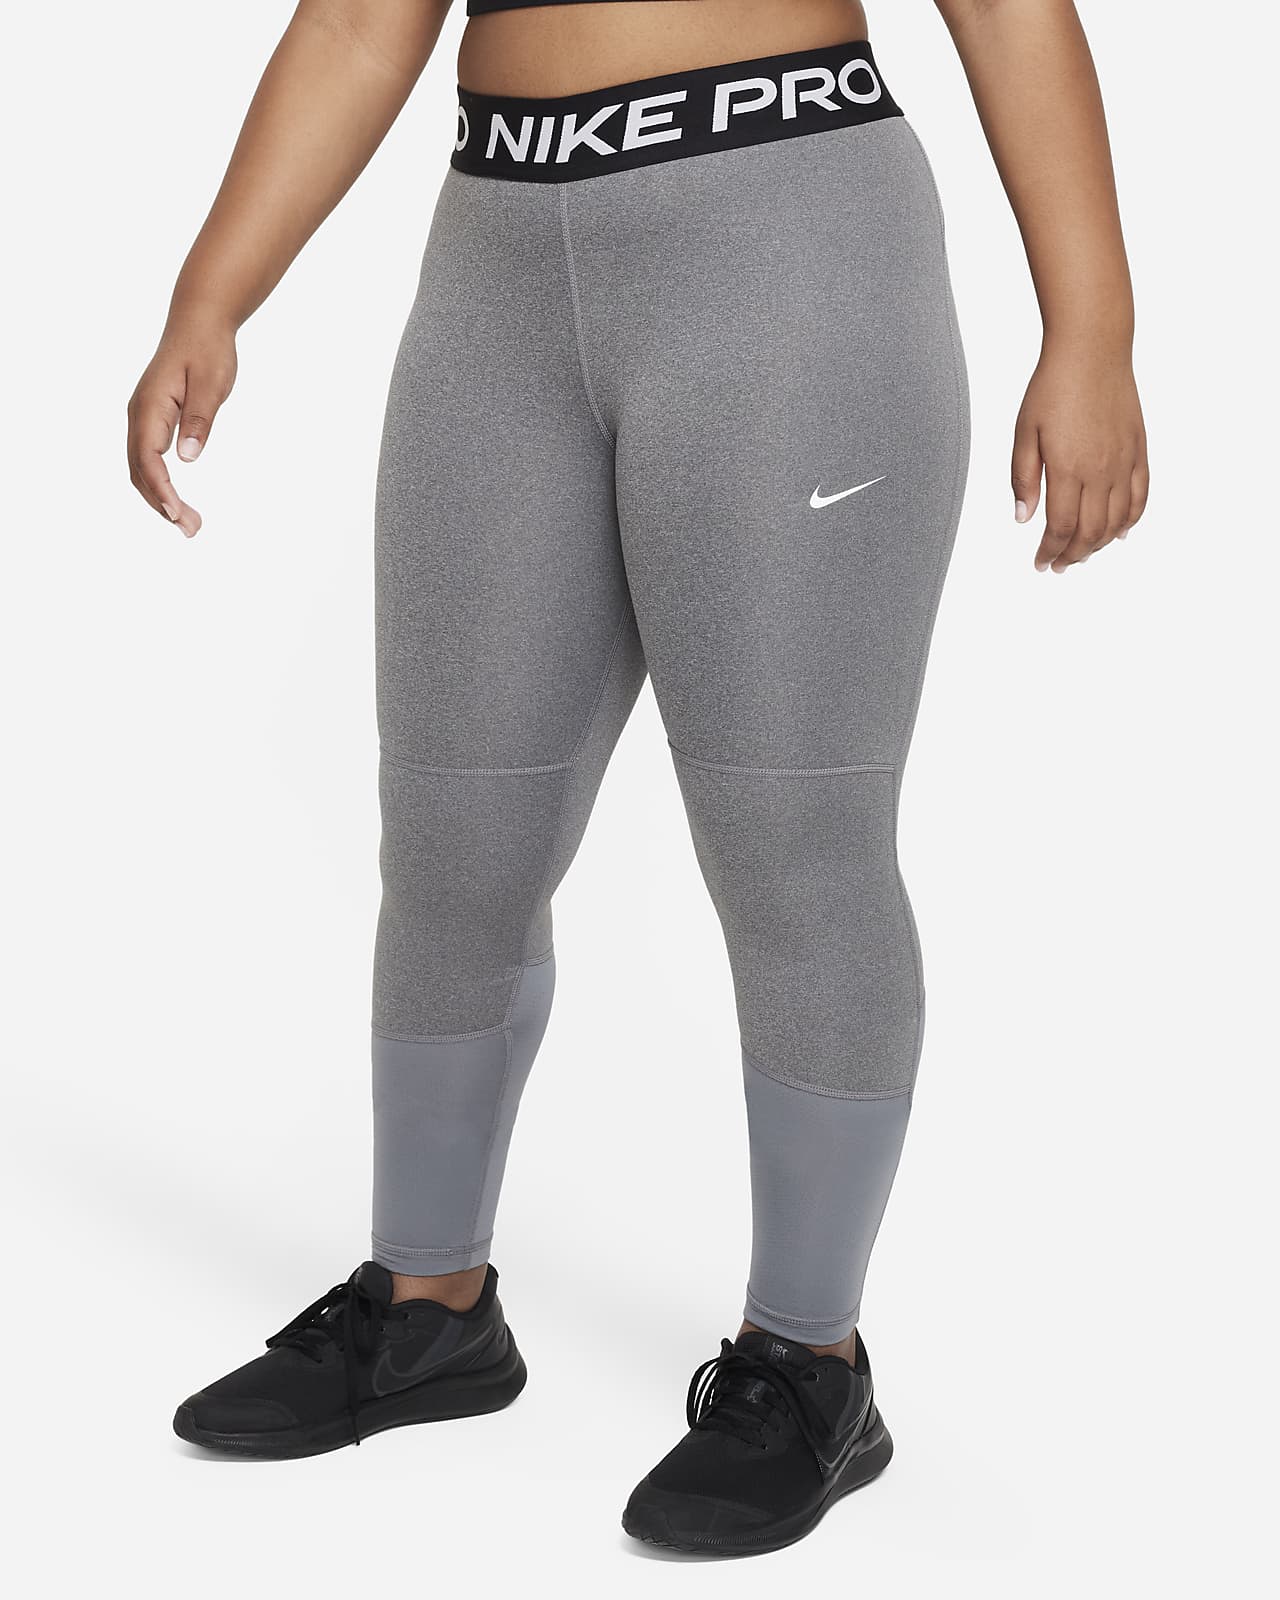 Leggings Nike Pro Dri-FIT (Taglia grande) – Ragazza